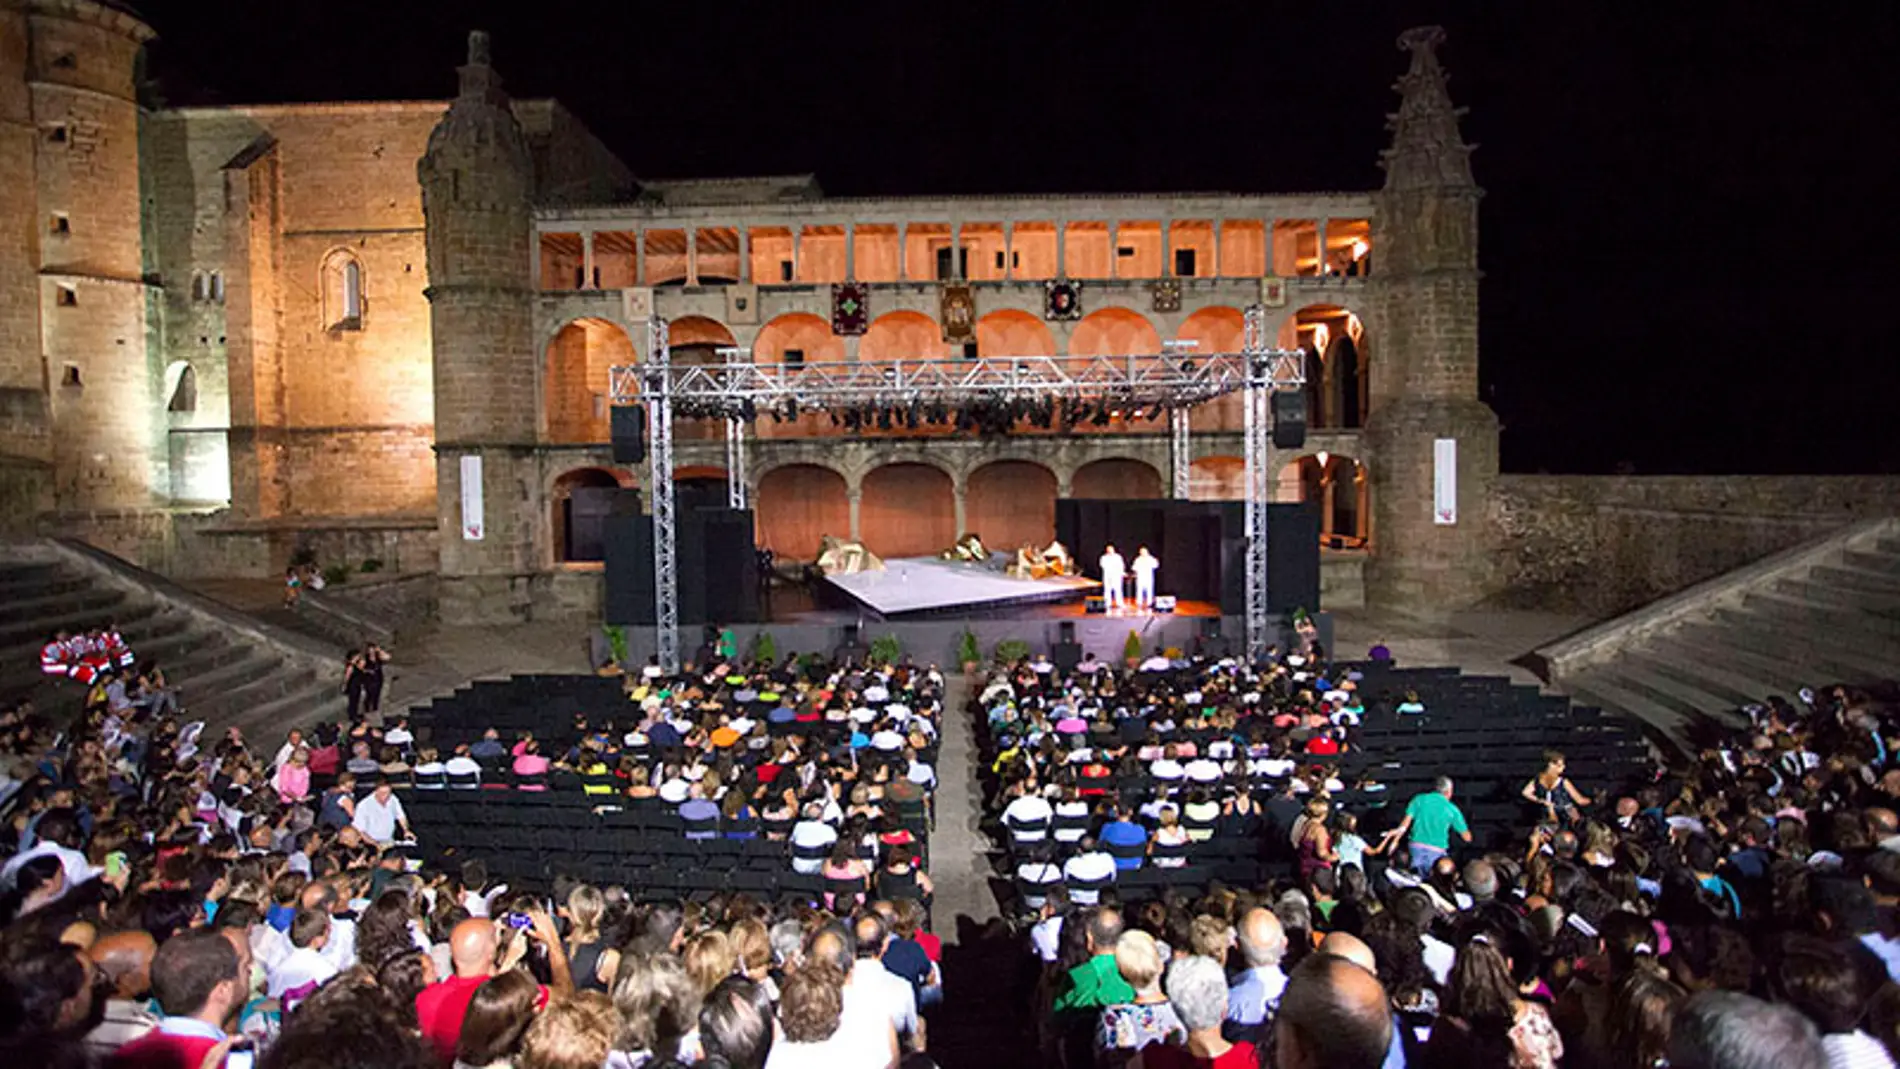 El XXXVII Festival de Teatro de Alcántara llegará este año con cuatro representaciones del 2 al 6 de agosto